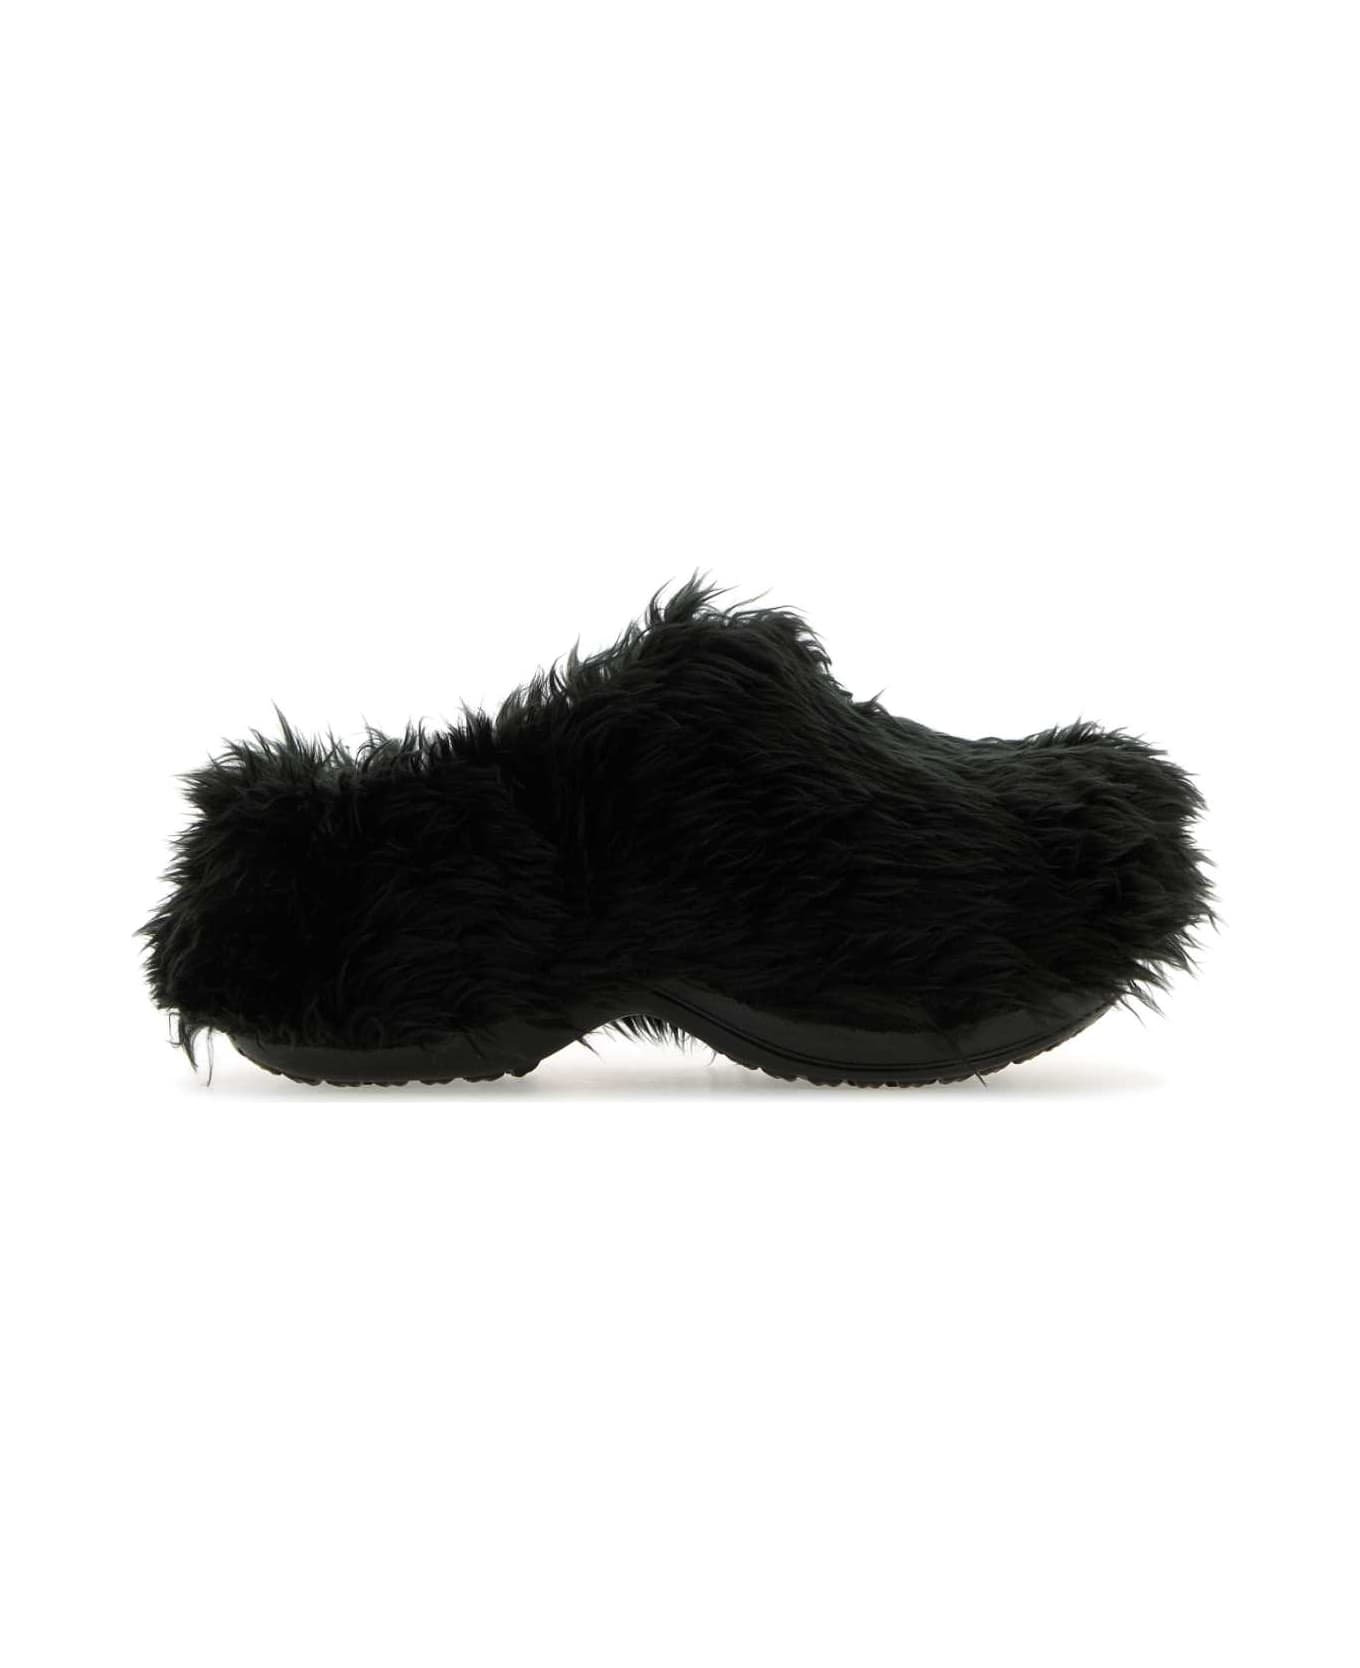 Balenciaga Rubber And Eco Fur Crocsâ ¢ Mules - Black